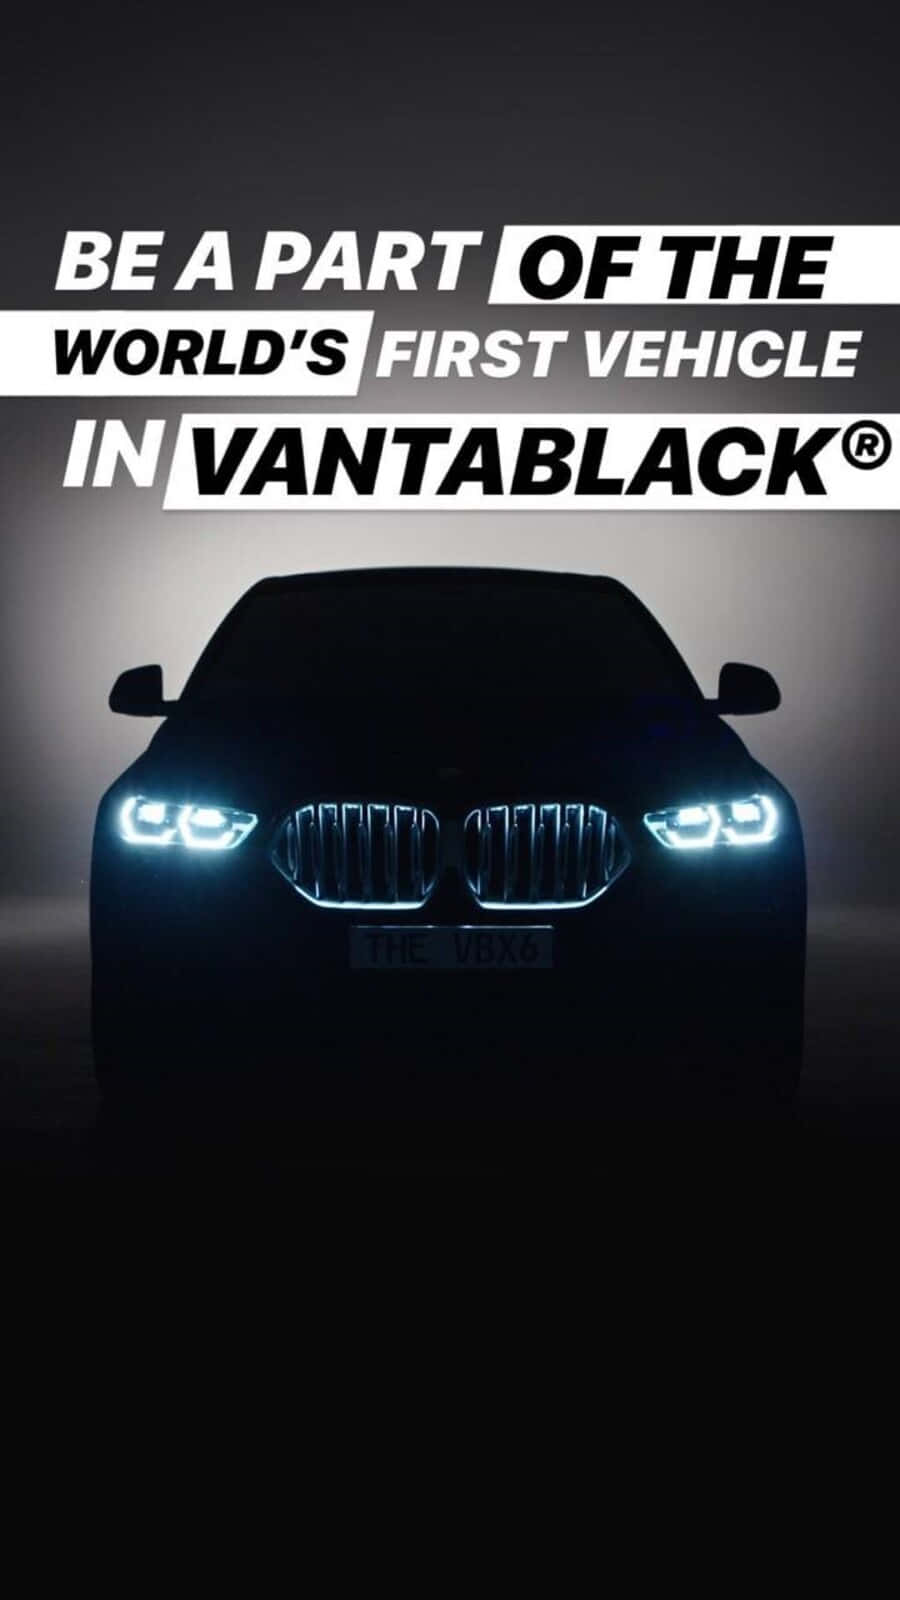 VANTABLACK - The Darkest Material on Earth 